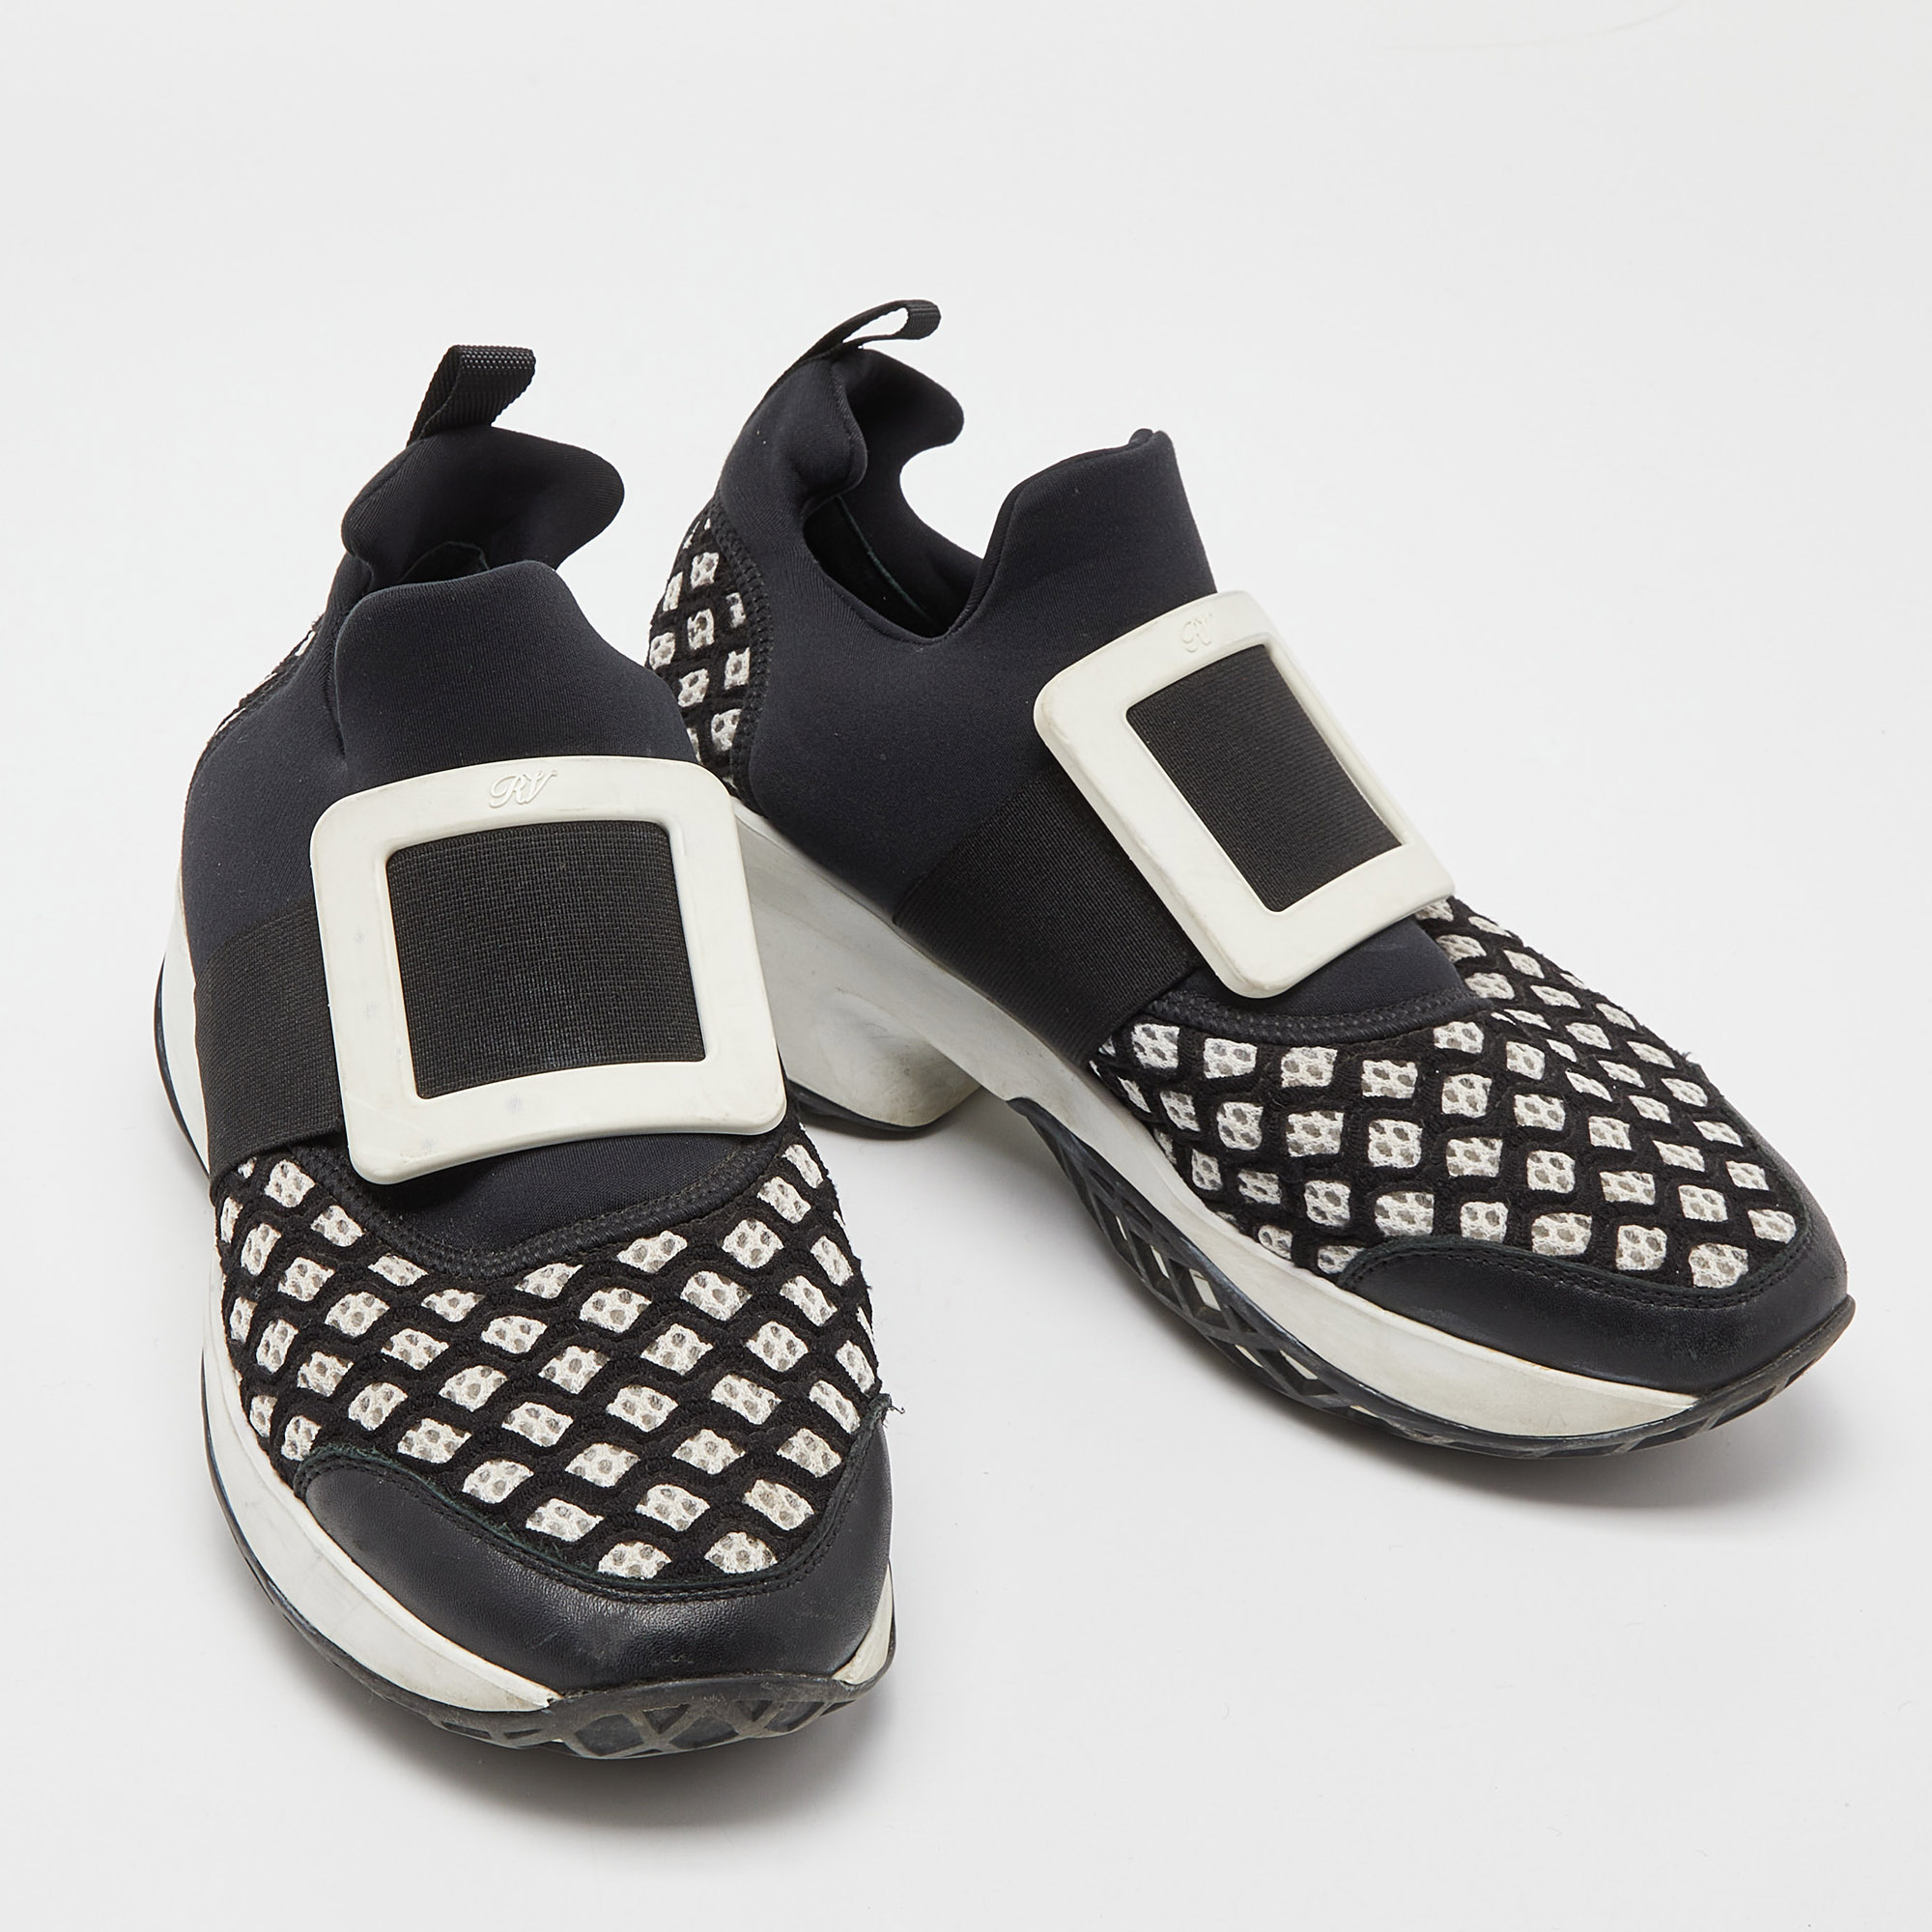 Roger Vivier Black/White Mesh And Neoprene Viv Run Sneakers Size 38